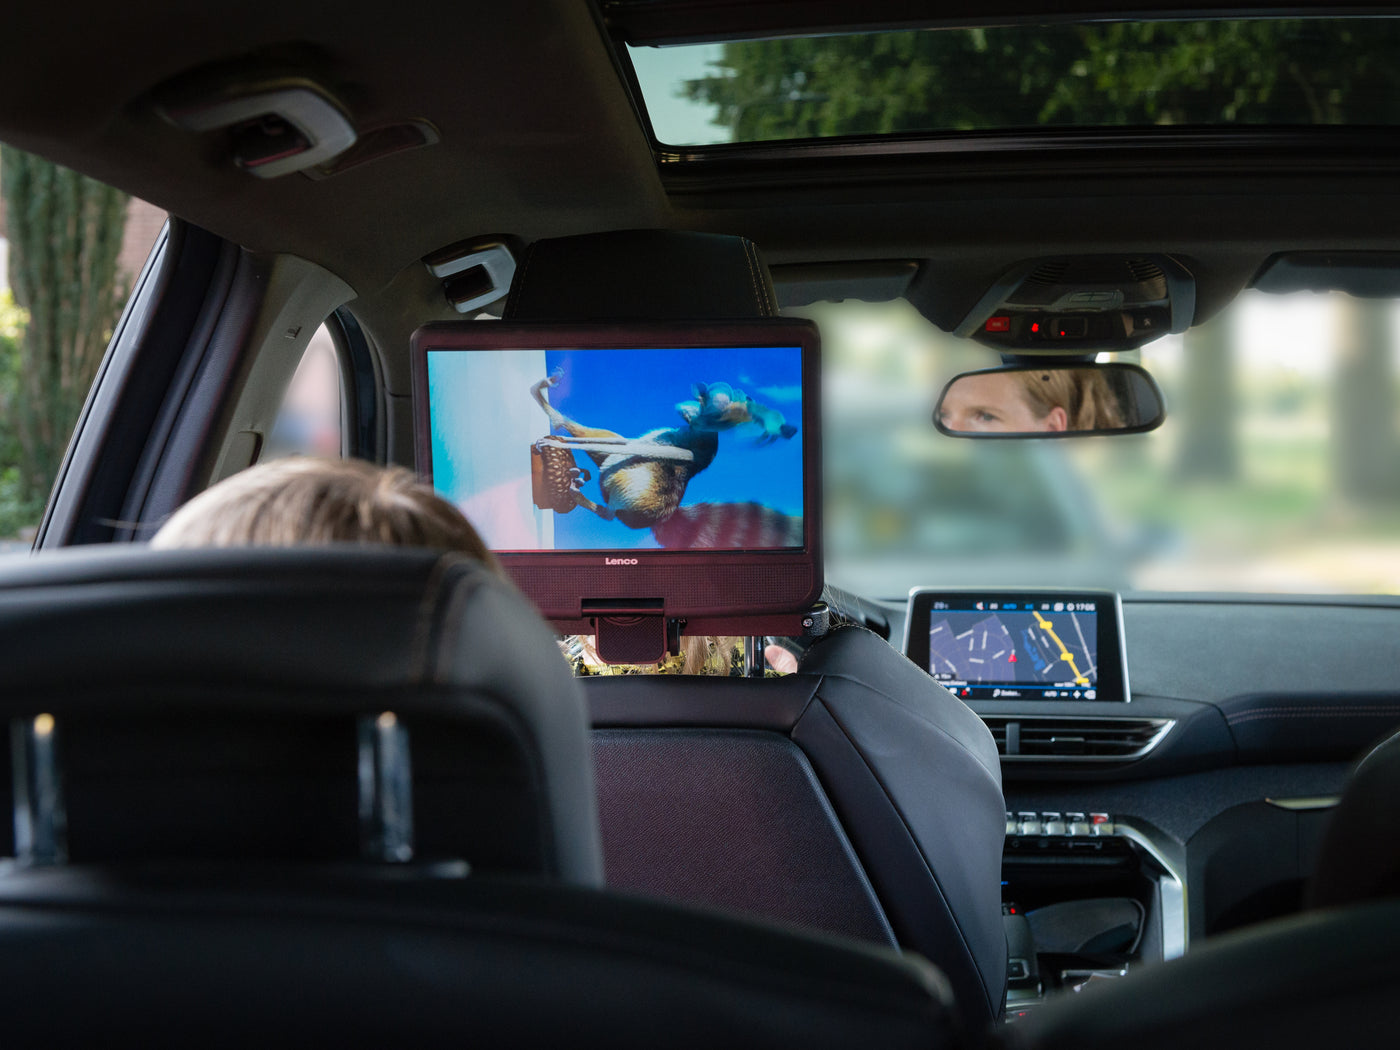 LENCO DVP-1017BK - Przenośny odtwarzacz DVD ze słuchawkami i uchwytem samochodowym - 10 cali - Obrotowy ekran - Słuchawki Bluetooth®